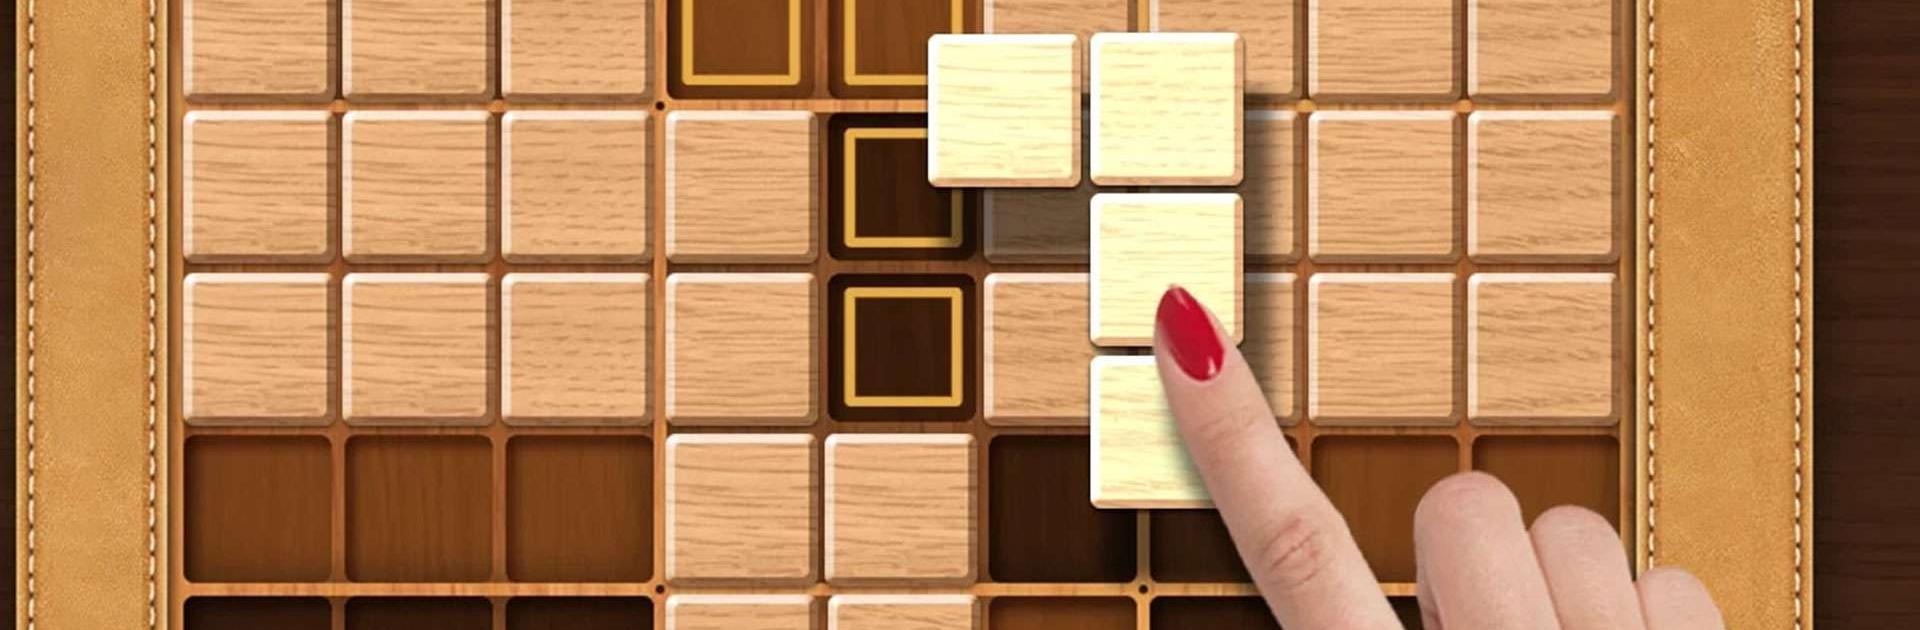 Doge Block : Sudoku Bulmacası